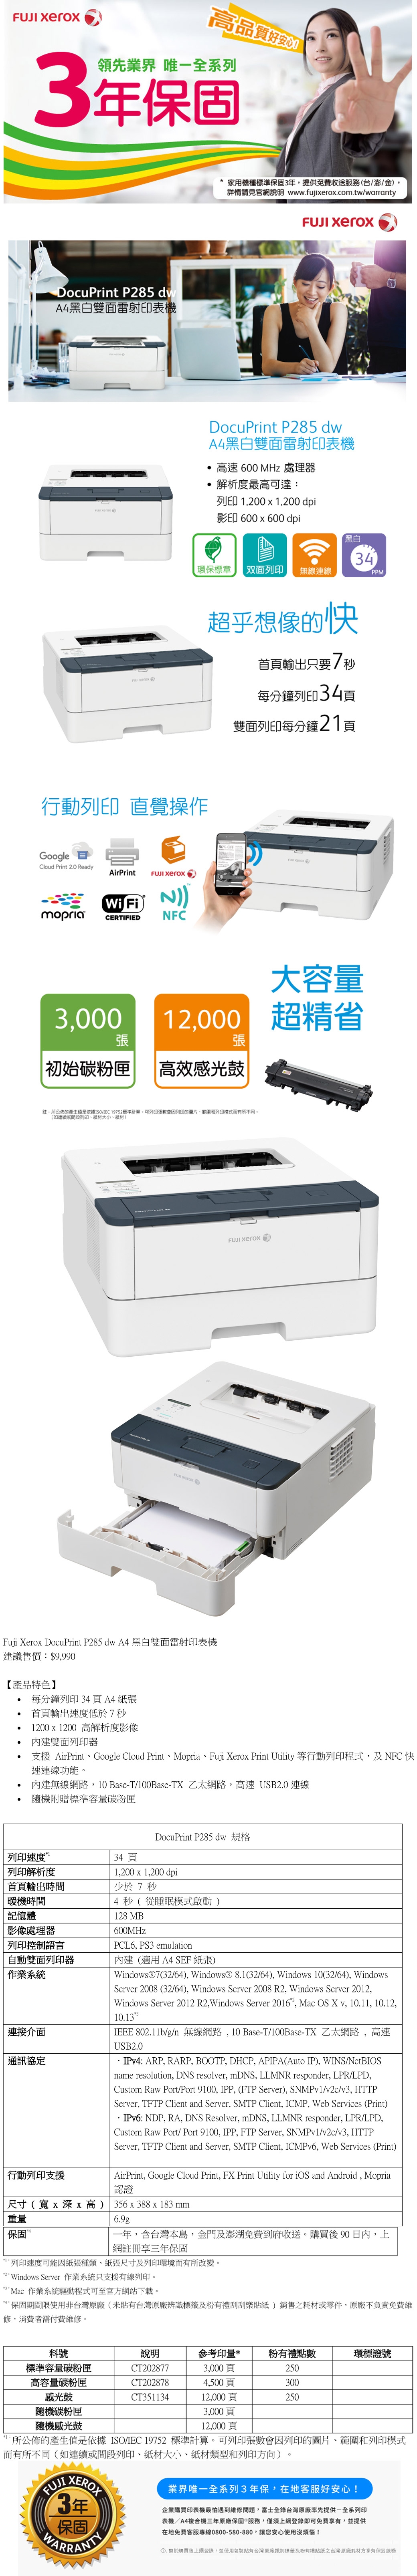 FujiXerox DocuPrint P285dw A4黑白雙面雷射印表機